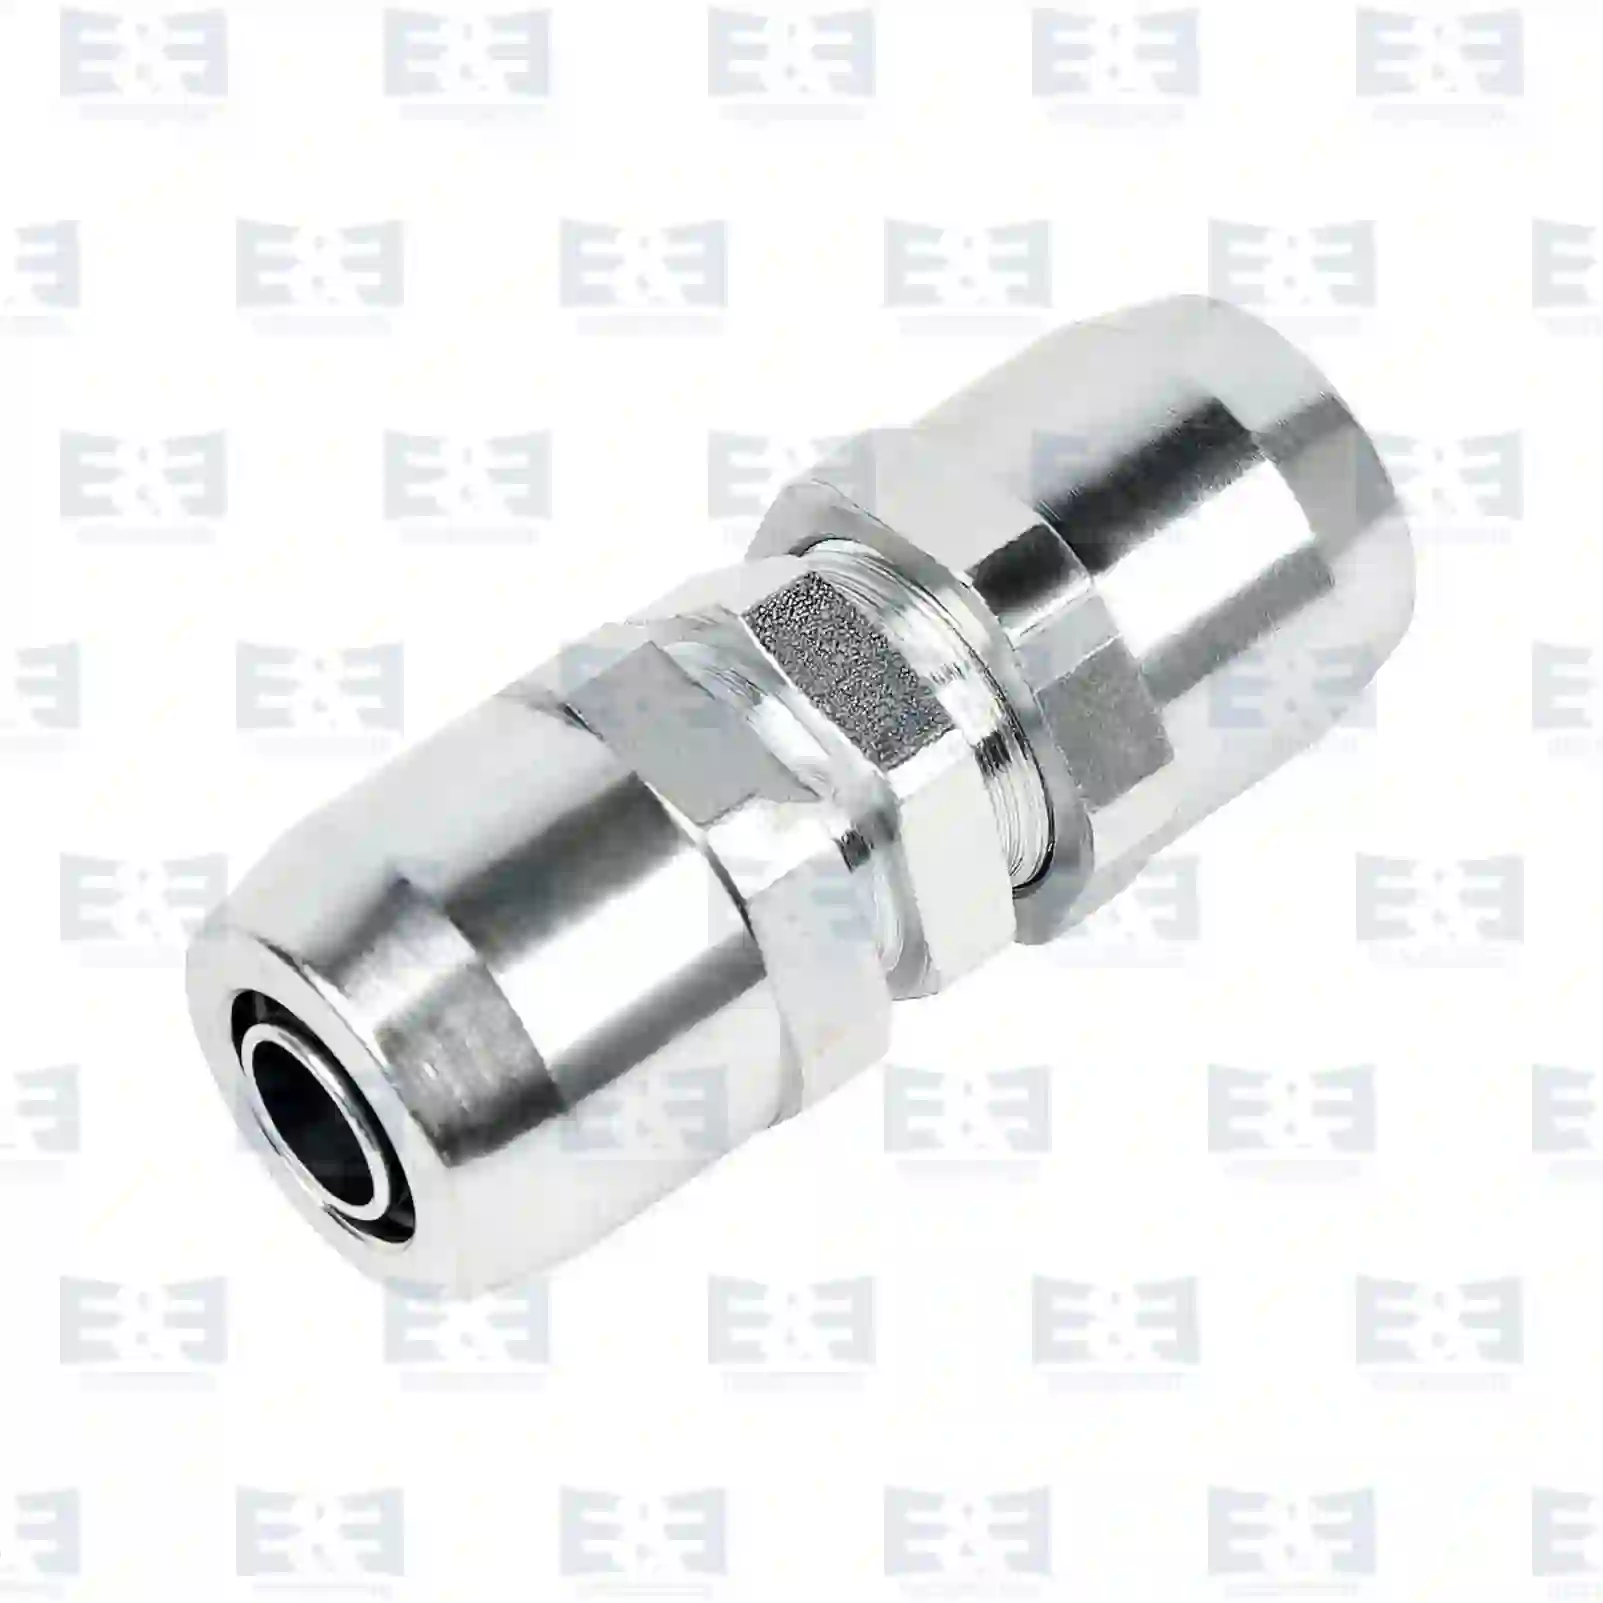  Push-in-connector, brass || E&E Truck Spare Parts | Truck Spare Parts, Auotomotive Spare Parts